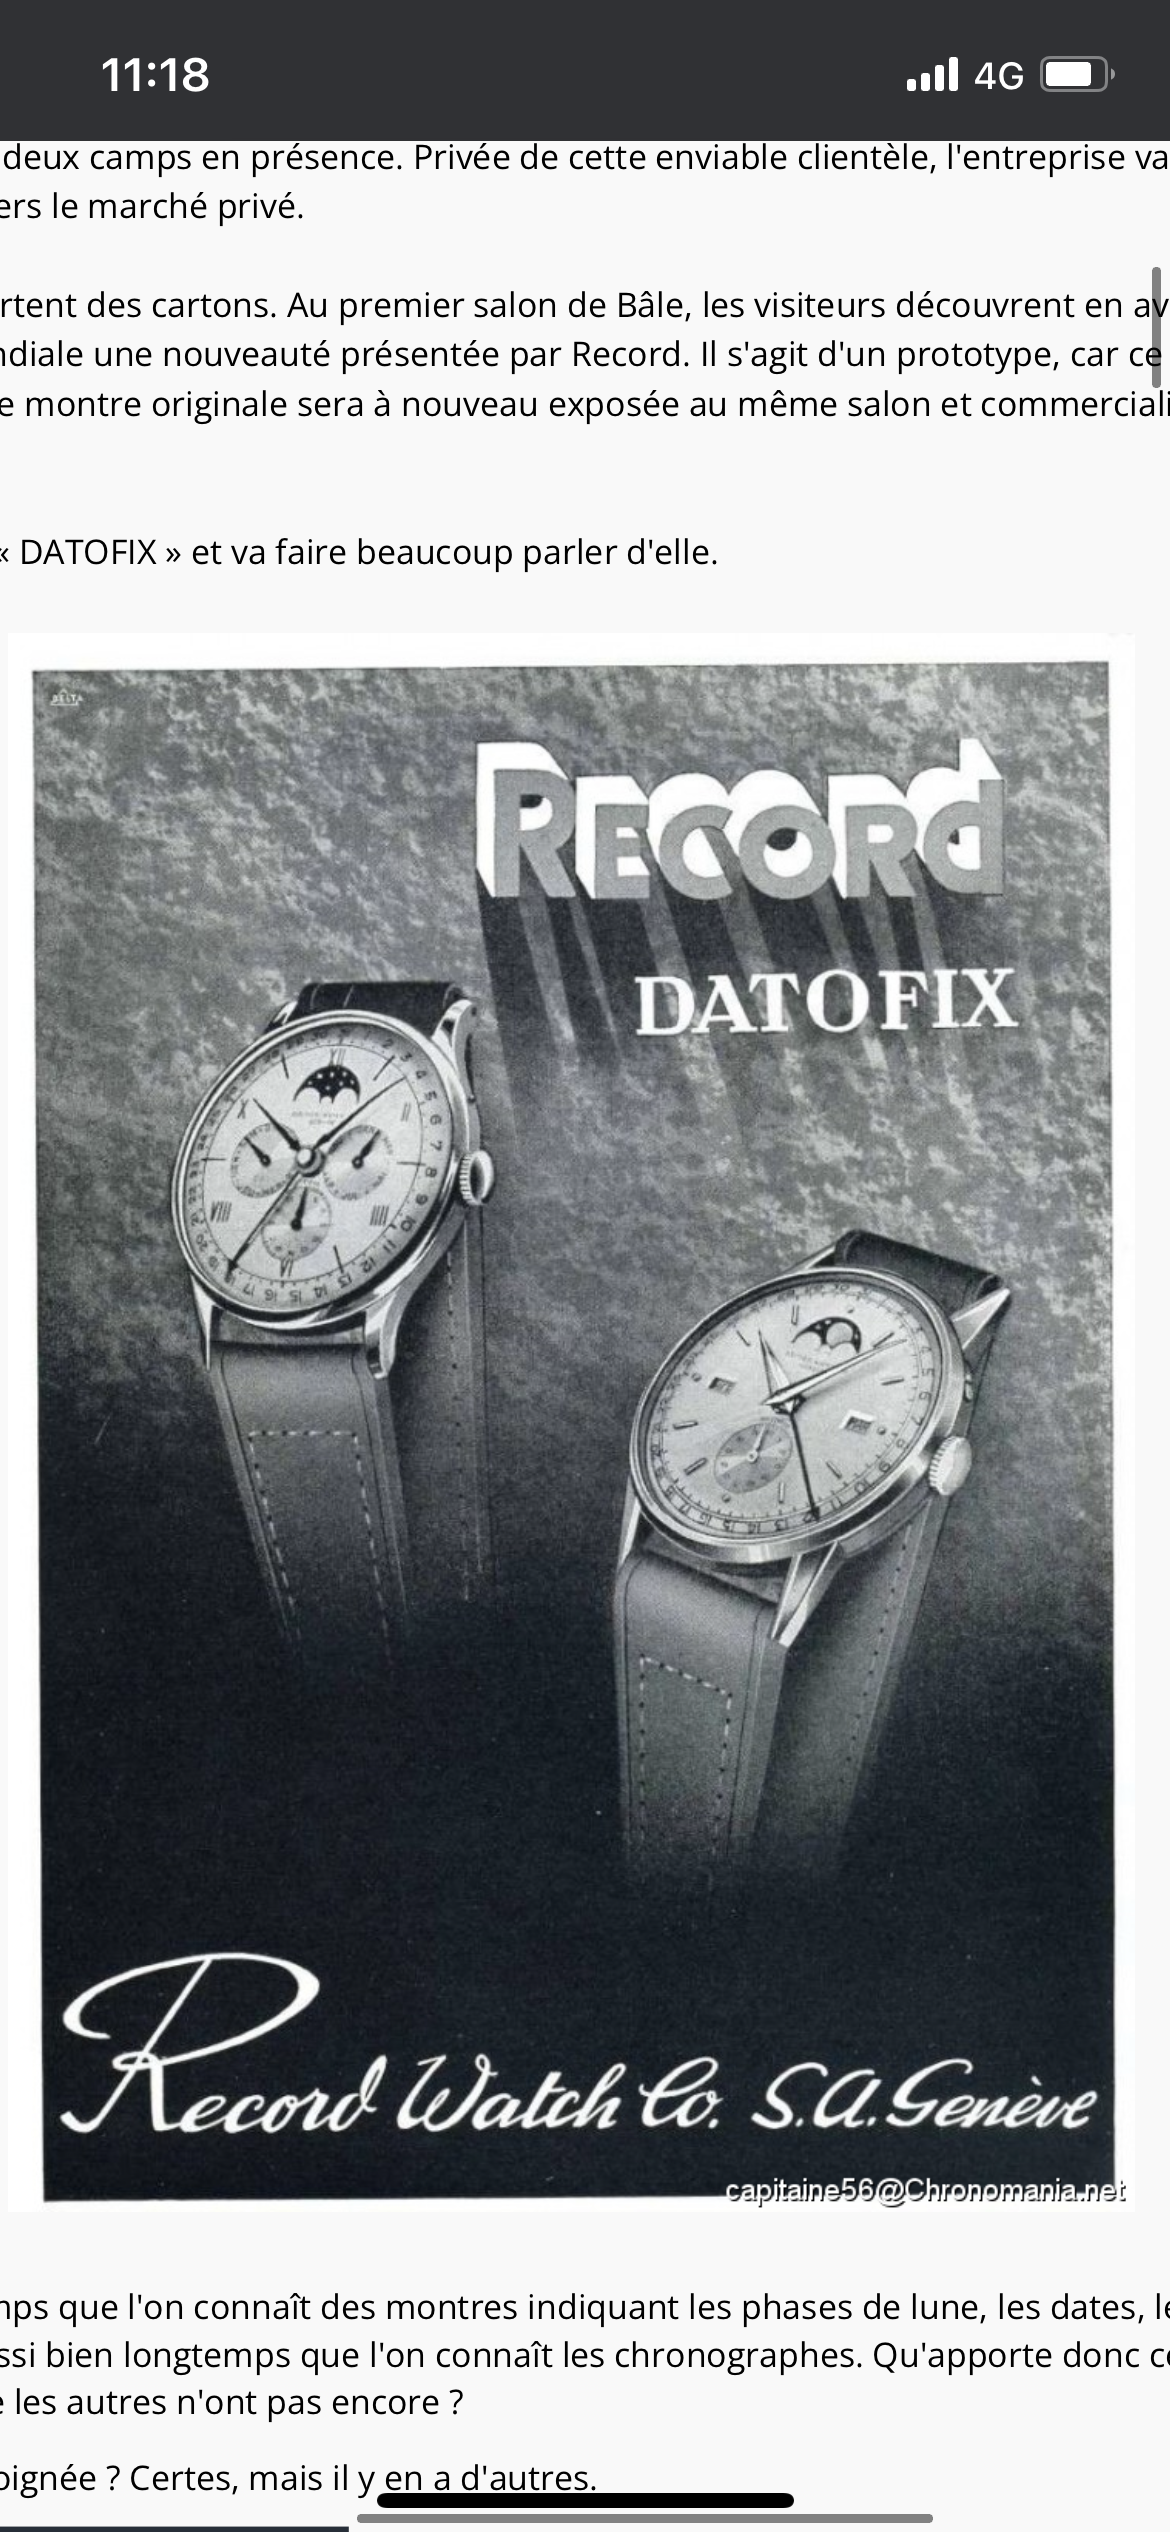 montre-vintage-collection-super-record-datofix-1950-acier-31mm-collect-collectible-aurore-morisse-chestret5-liège-marchand-art-affaire-conclue-paris-liège47